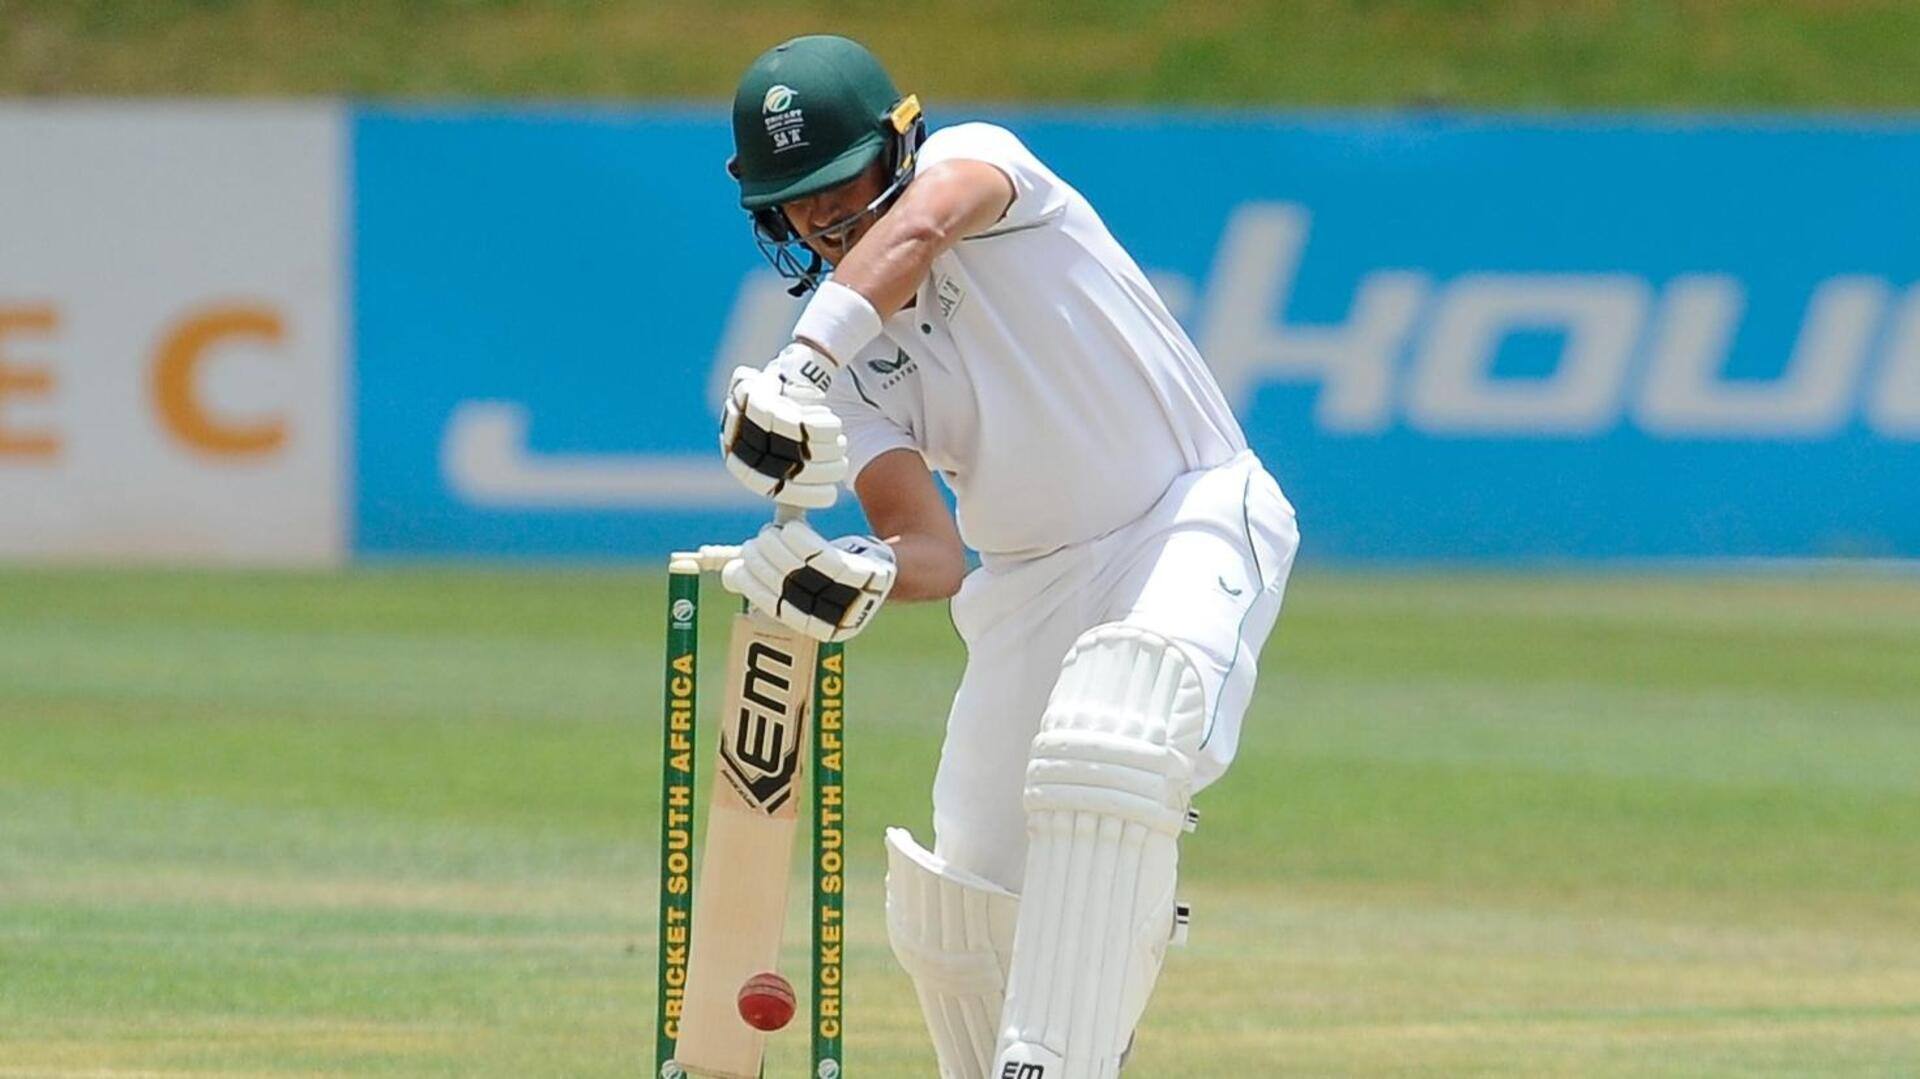 दूसरा टेस्ट: भारत के खिलाफ दक्षिण अफ्रीका ने टॉस जीतकर चुनी बल्लेबाजी, जानिए प्लेइंग इलेवन